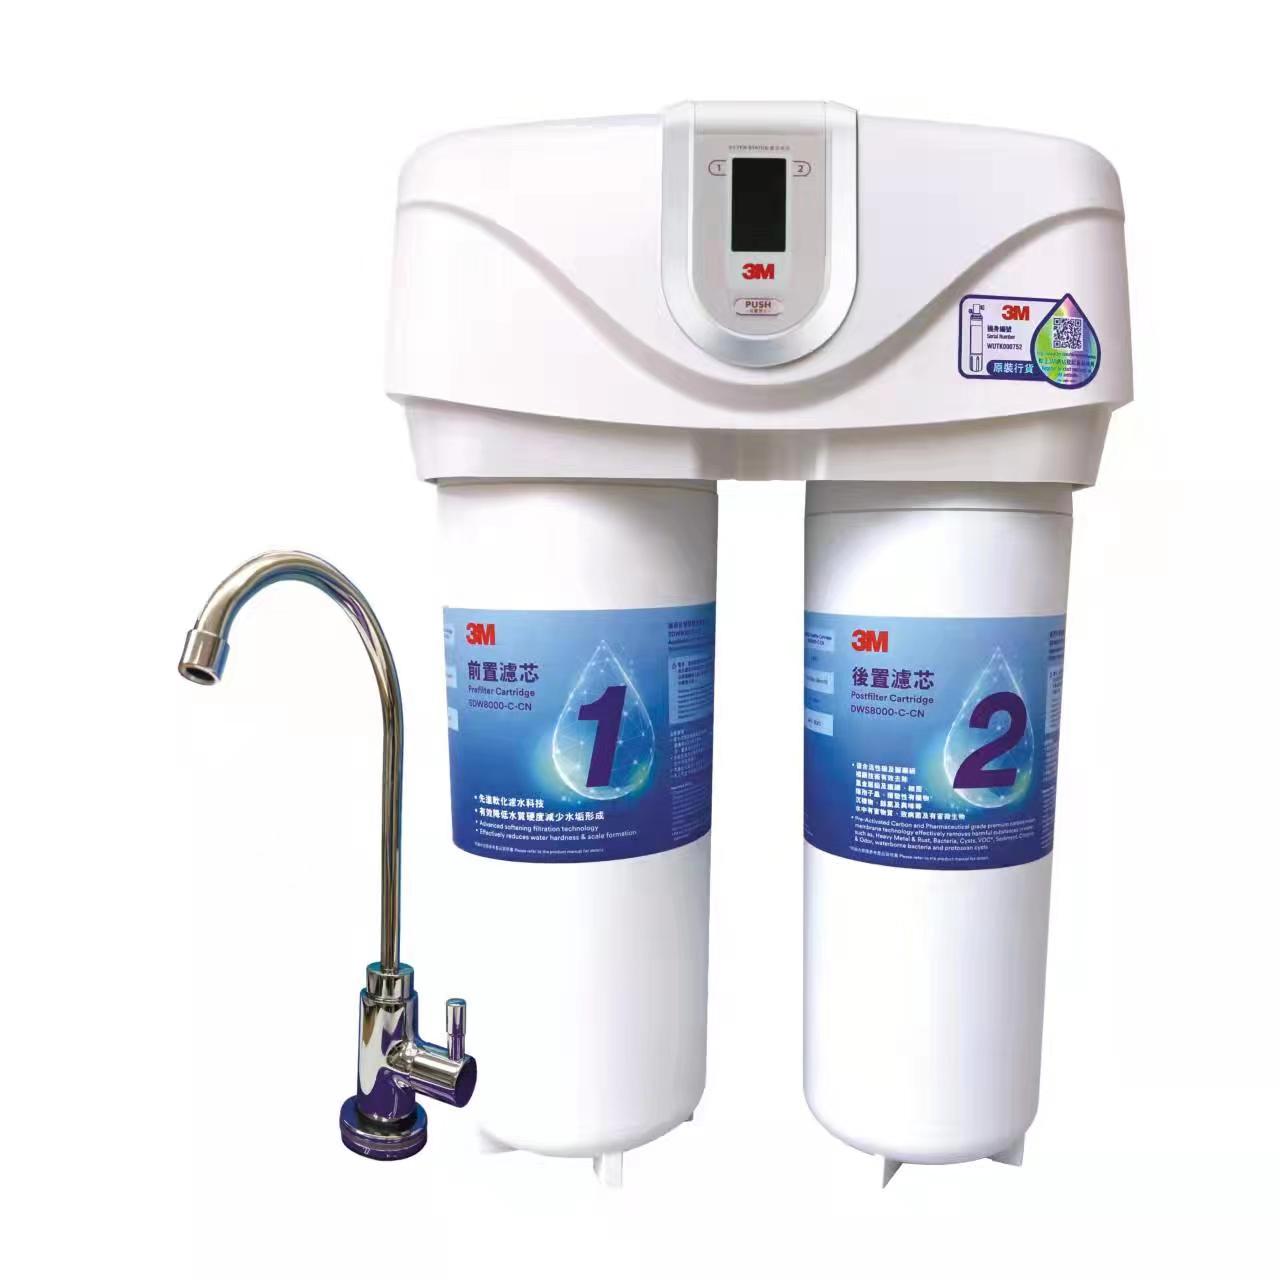 3M [3/i]智能雙效濾水系統[跟*27981] SDW8000T-CN 水龍頭